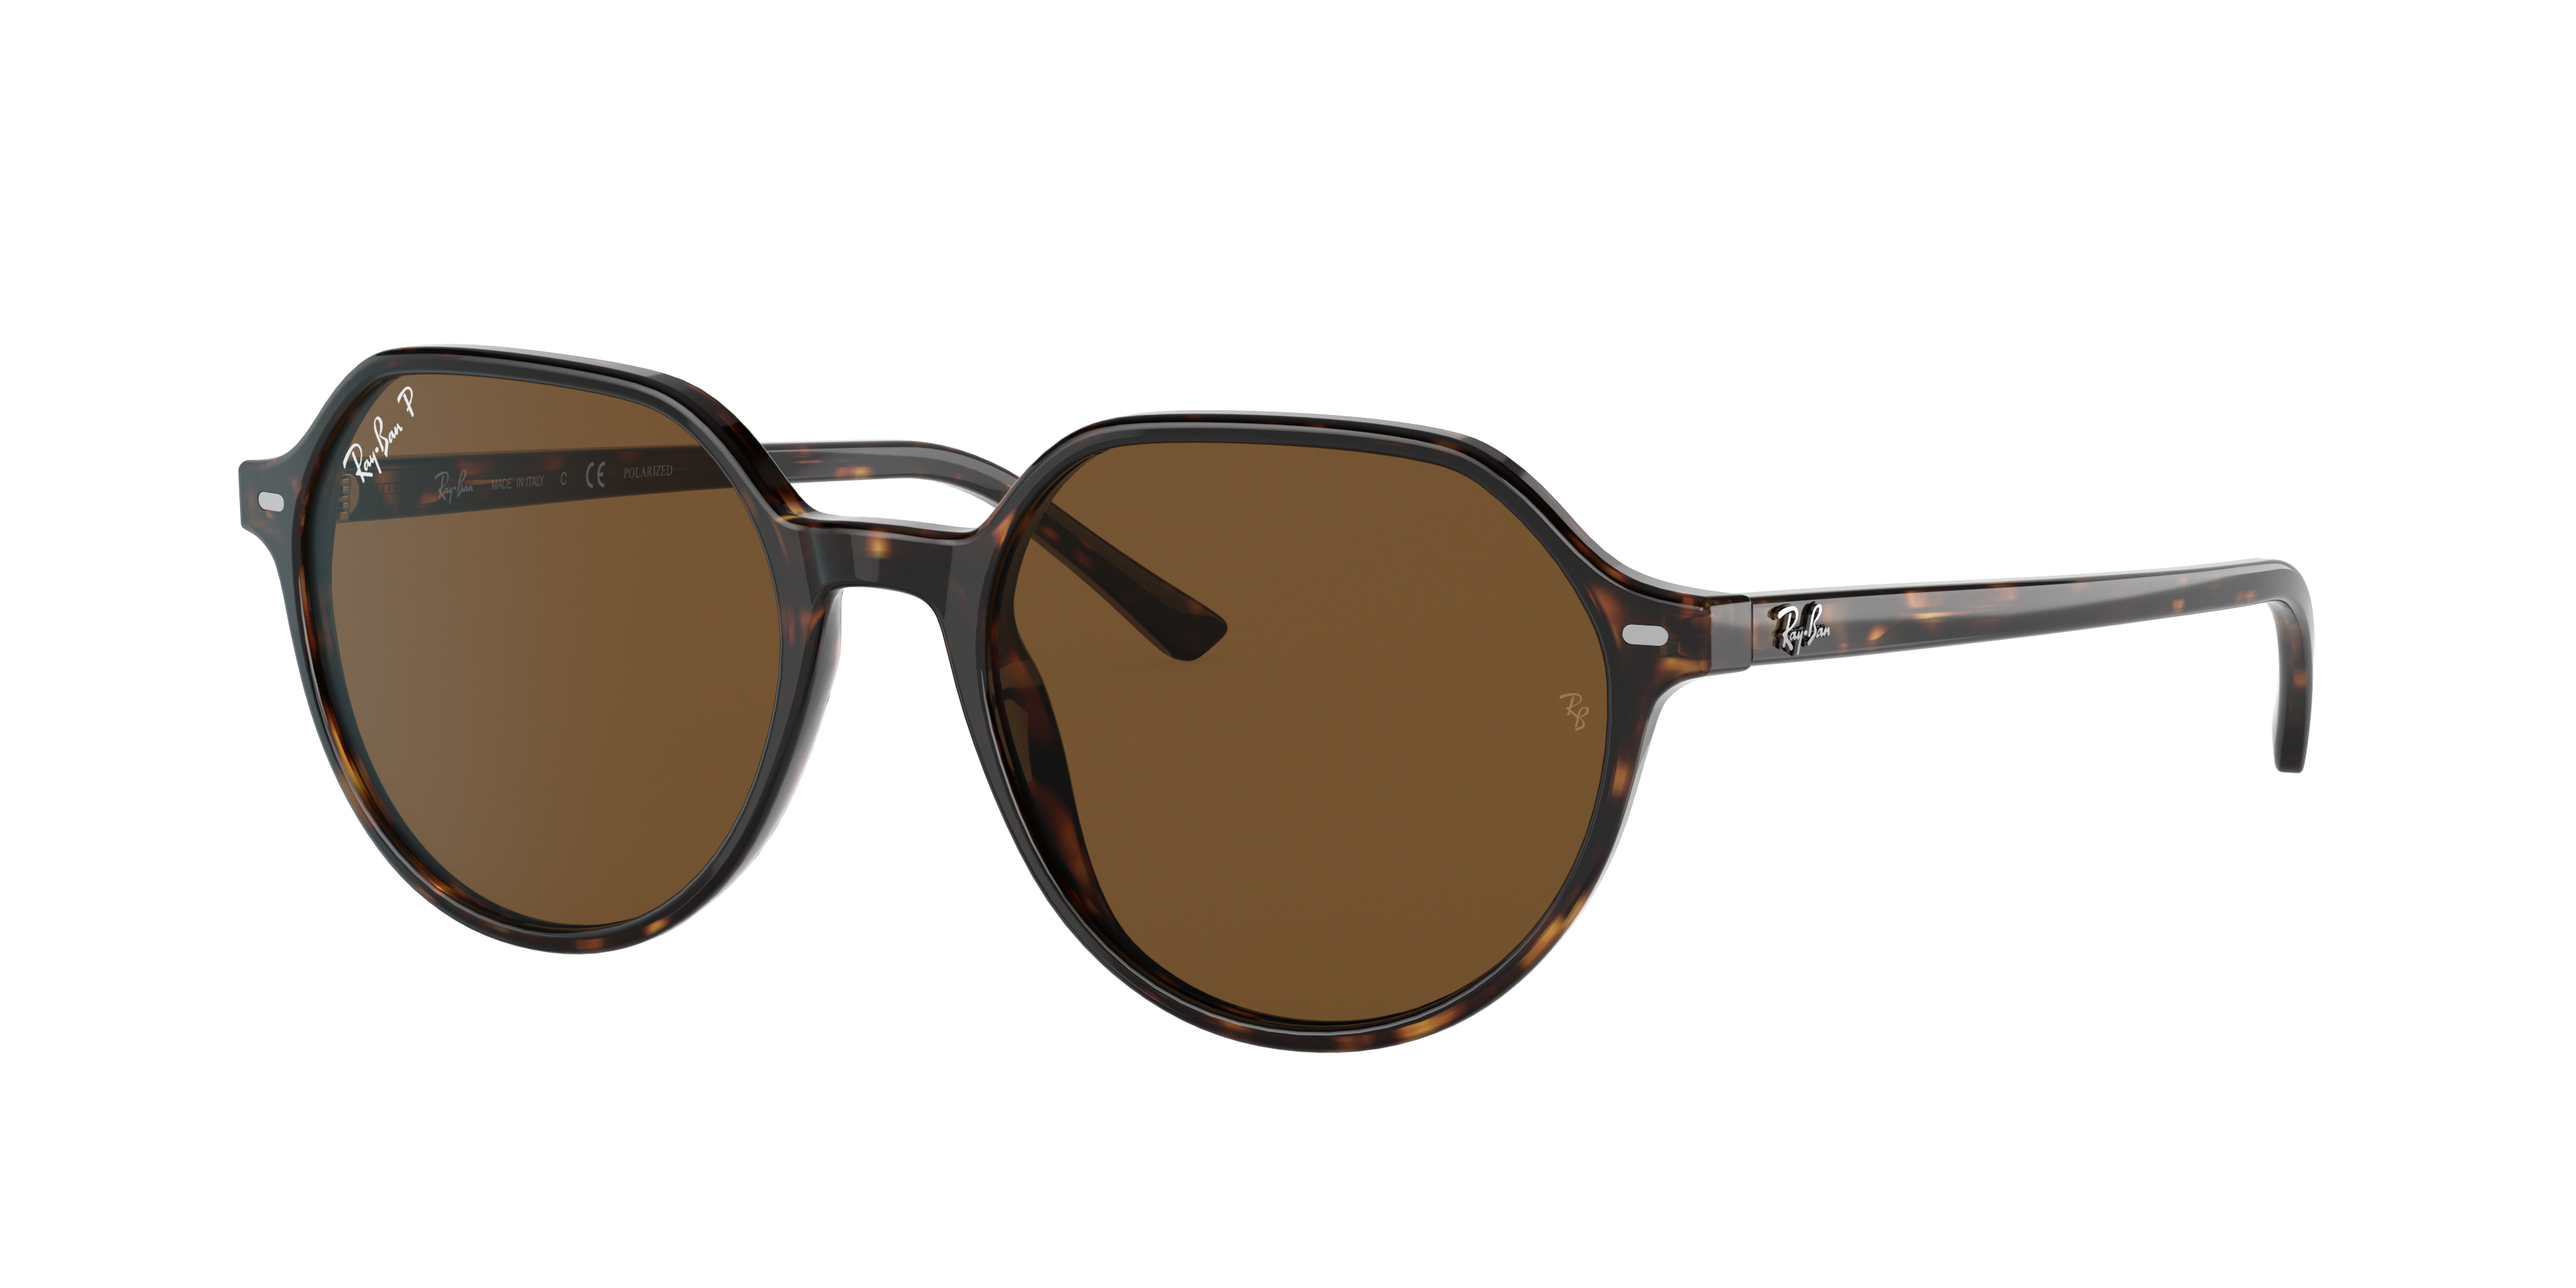 Ray Ban Thalia Sunglasses Tortoise Frame Brown Lenses Polarized 51-18